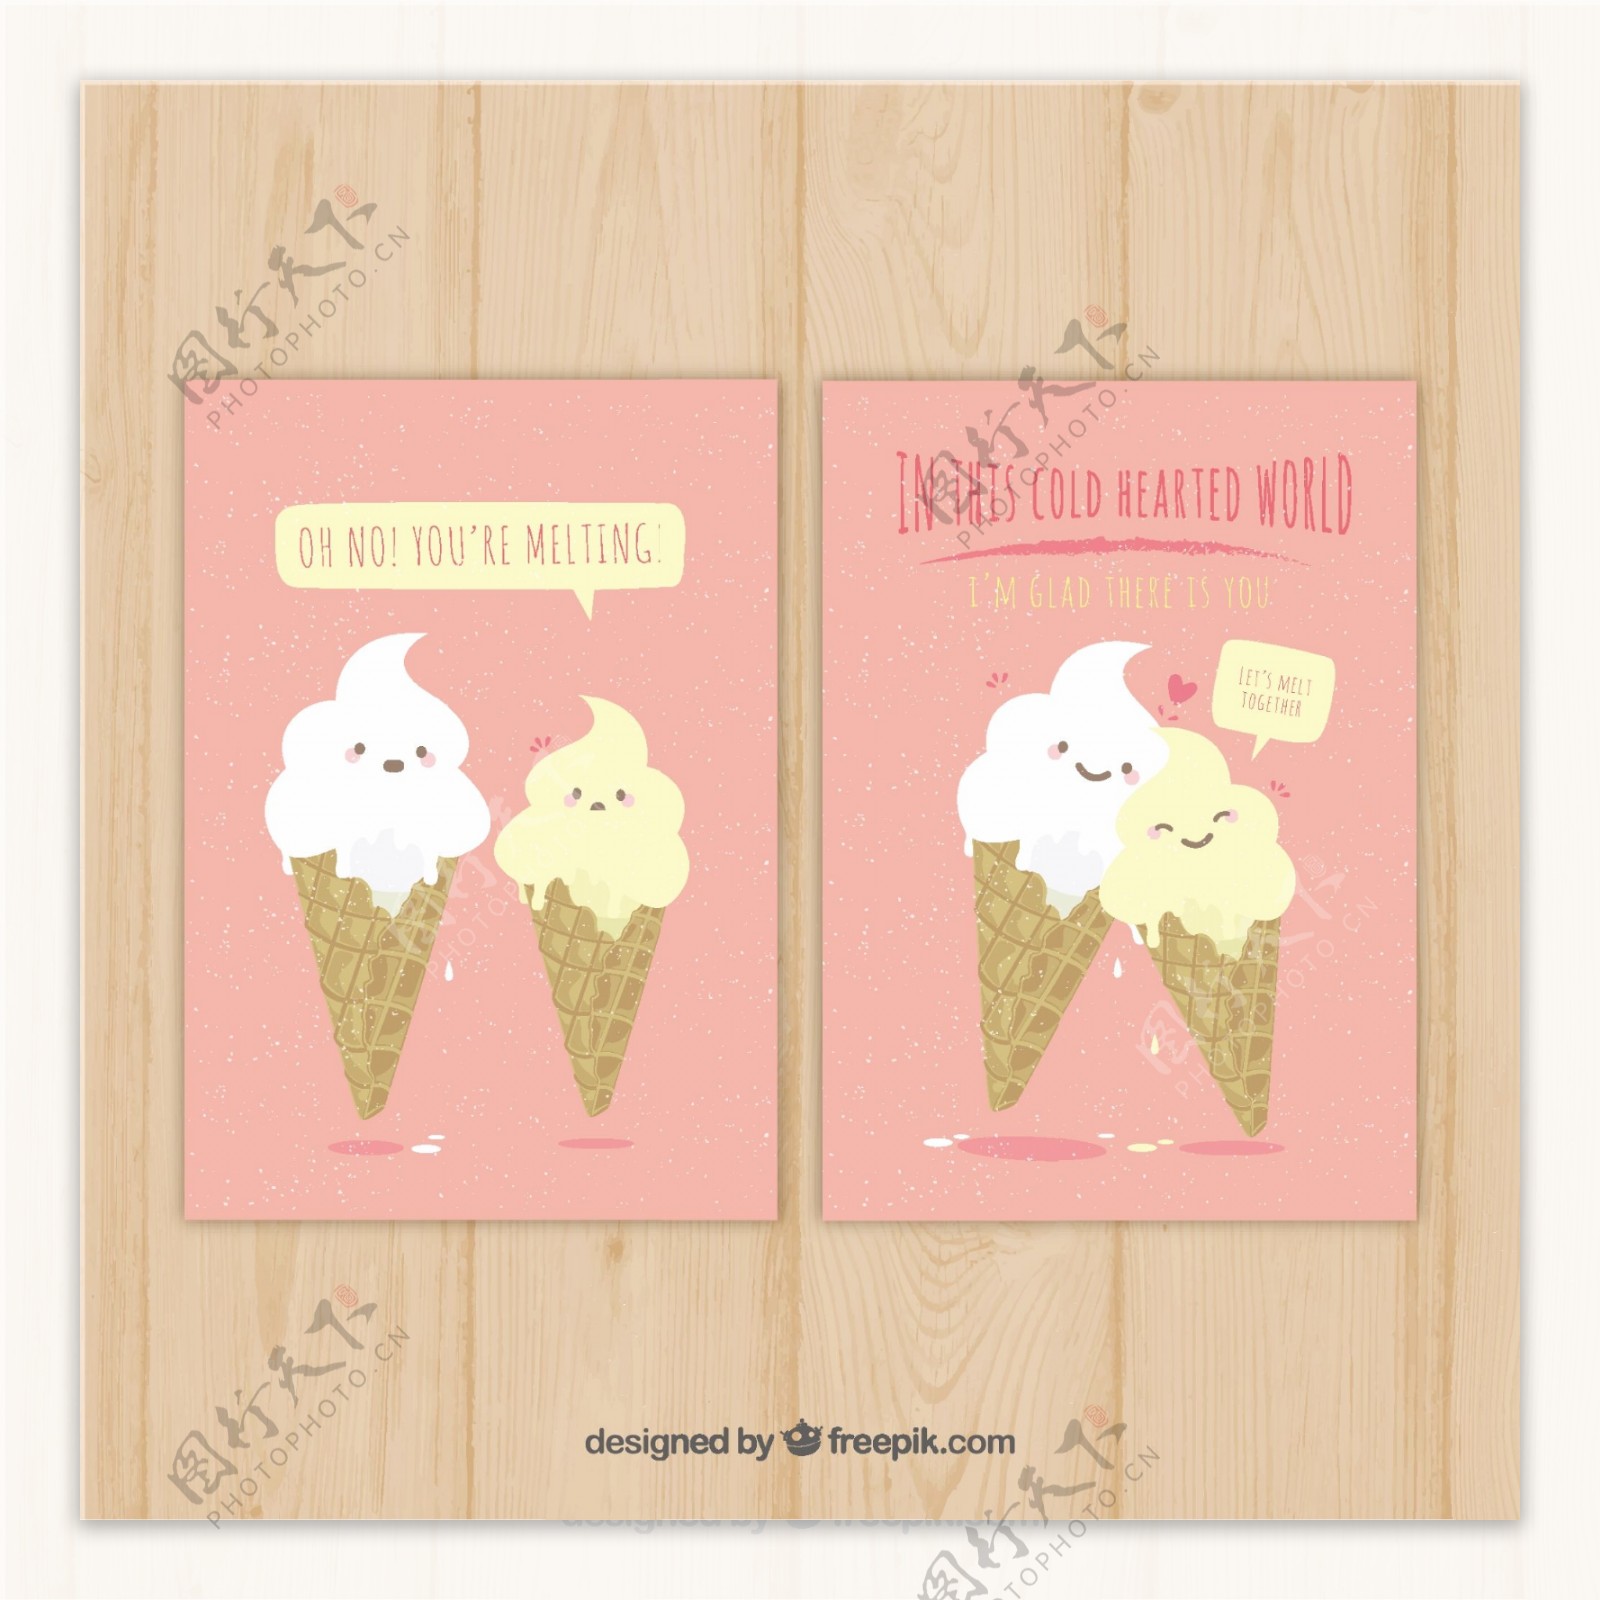 粉红色卡片模板与冰淇淋的人物